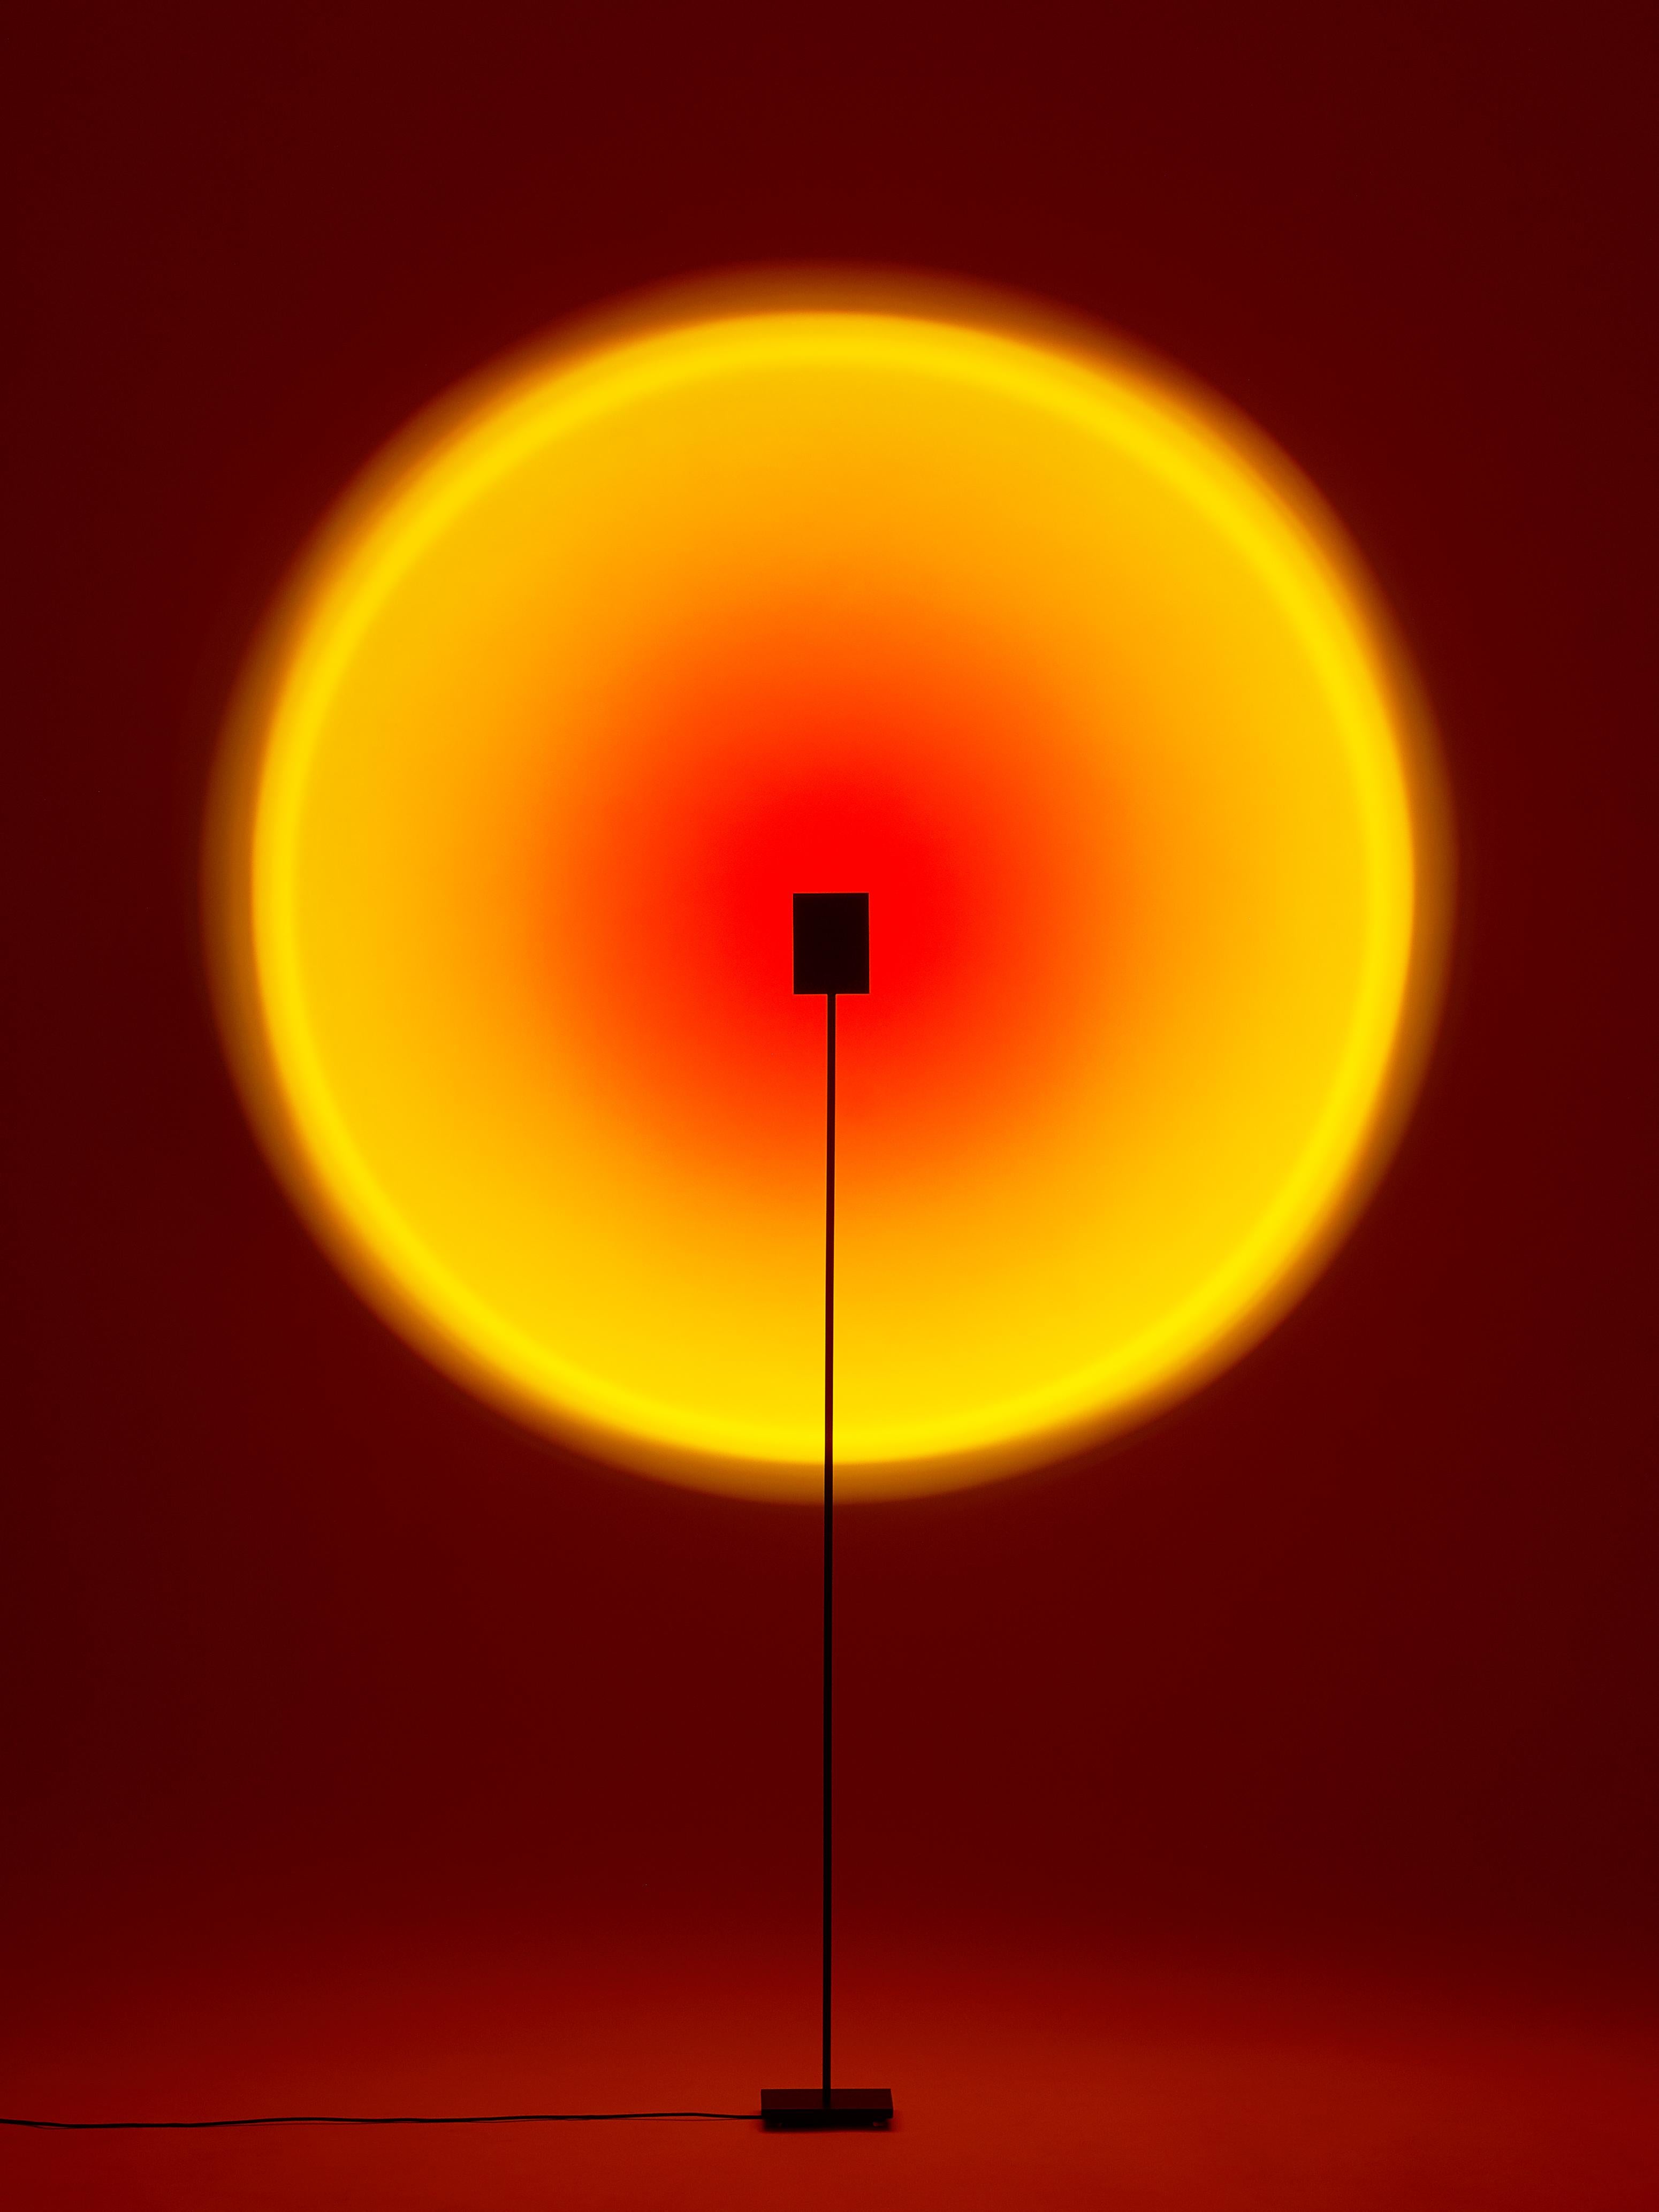 Sonnenuntergang rote halo evo II stehleuchte von Mandalaki
Abmessungen: T 10 x B 13 x H 120 cm
MATERIALIEN: Aluminium, Messing, Eisen, Glas
Erhältlich in anderen hellen Farben.

Gewicht: 3 kg
Eingang: 100-240V 50-60Hz
Ausgang: 12V
LED Leistung: